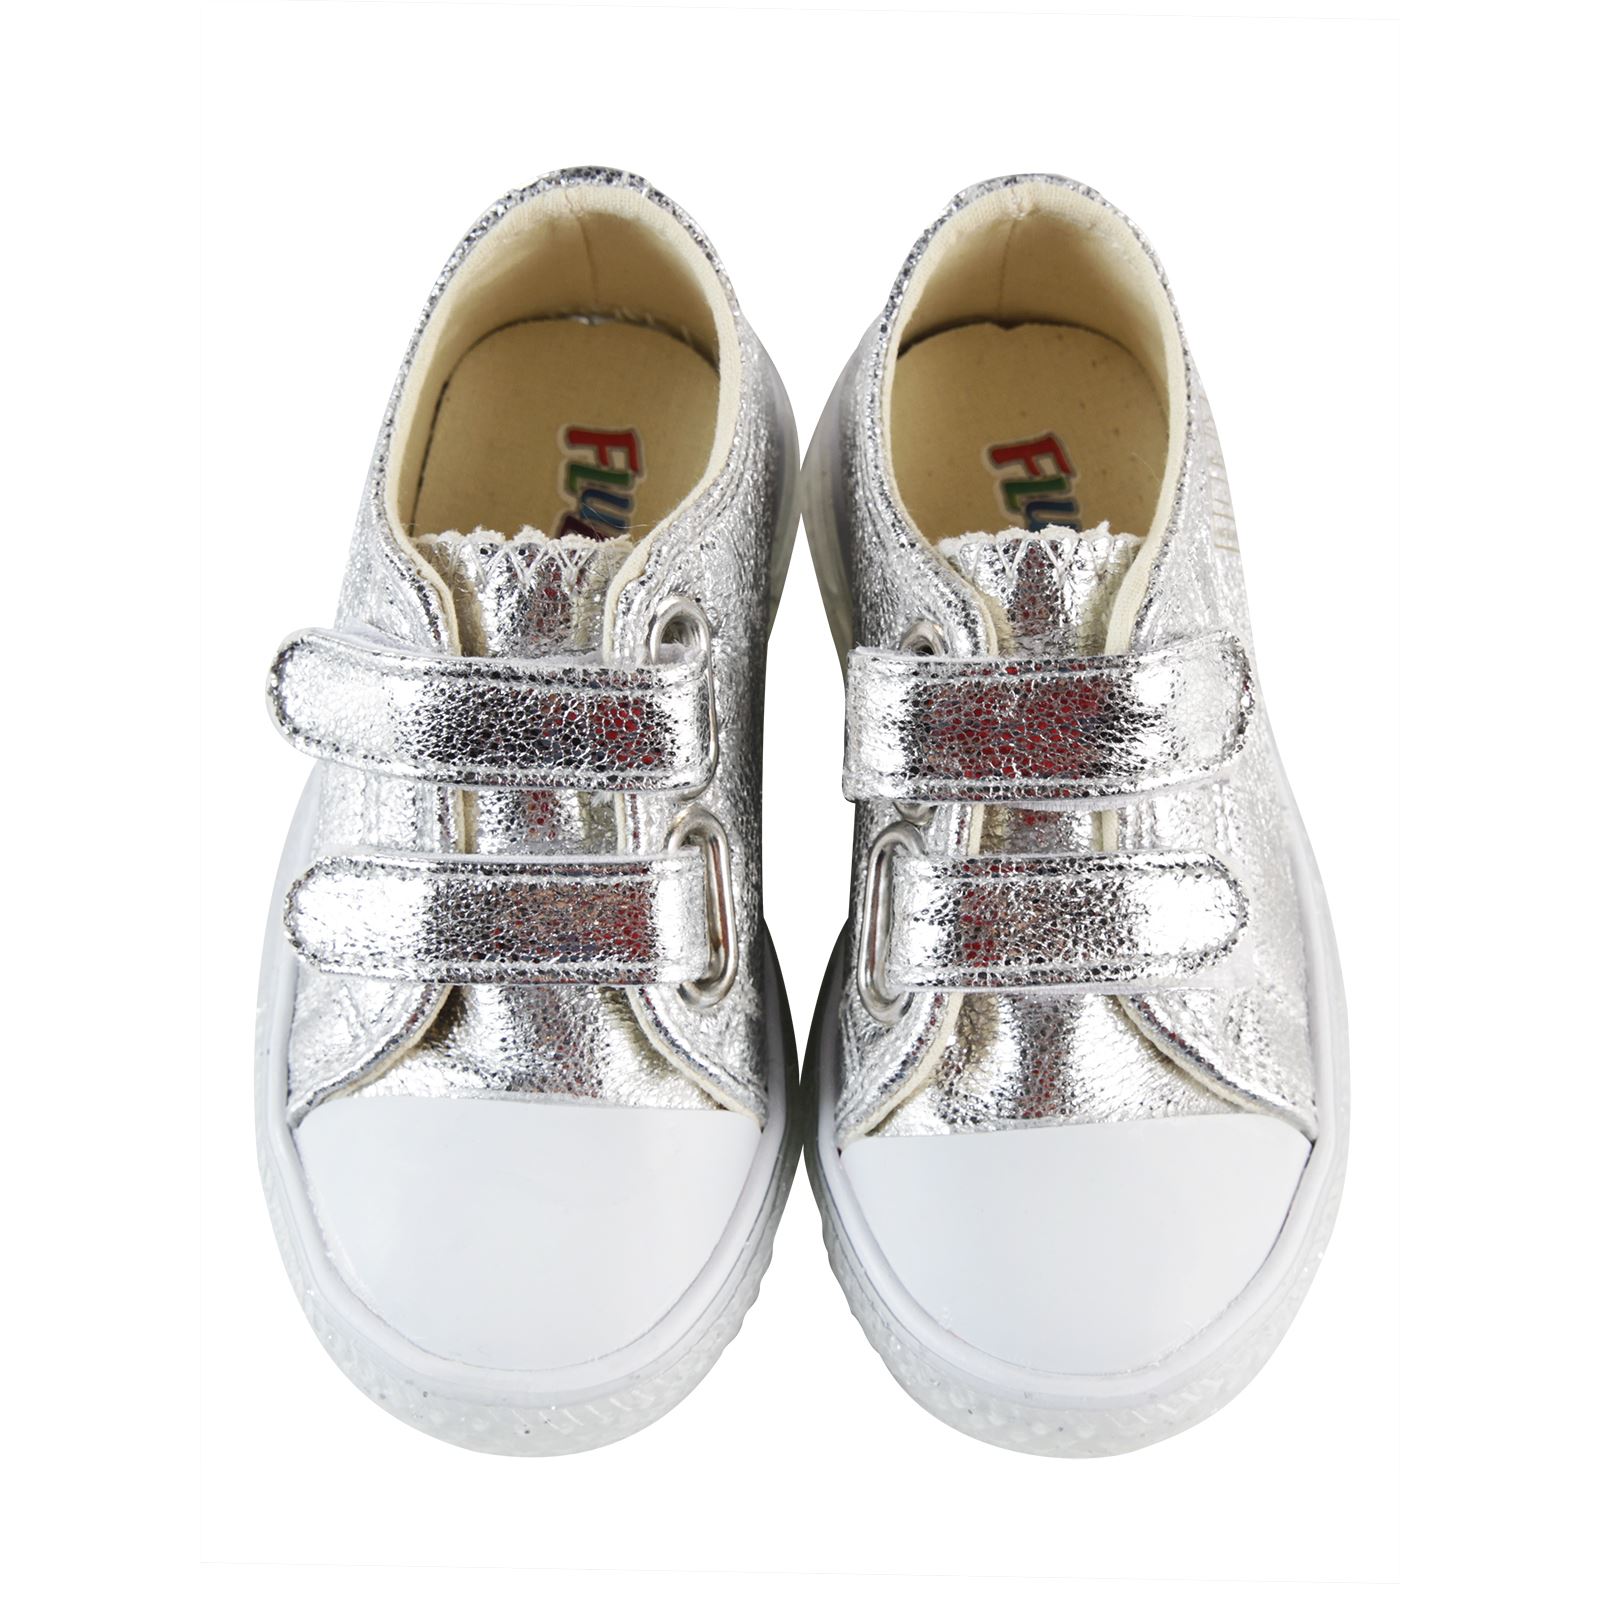 Flubber Kız Çocuk Işıklı Spor Ayakkabı 21-25 Numara Gri